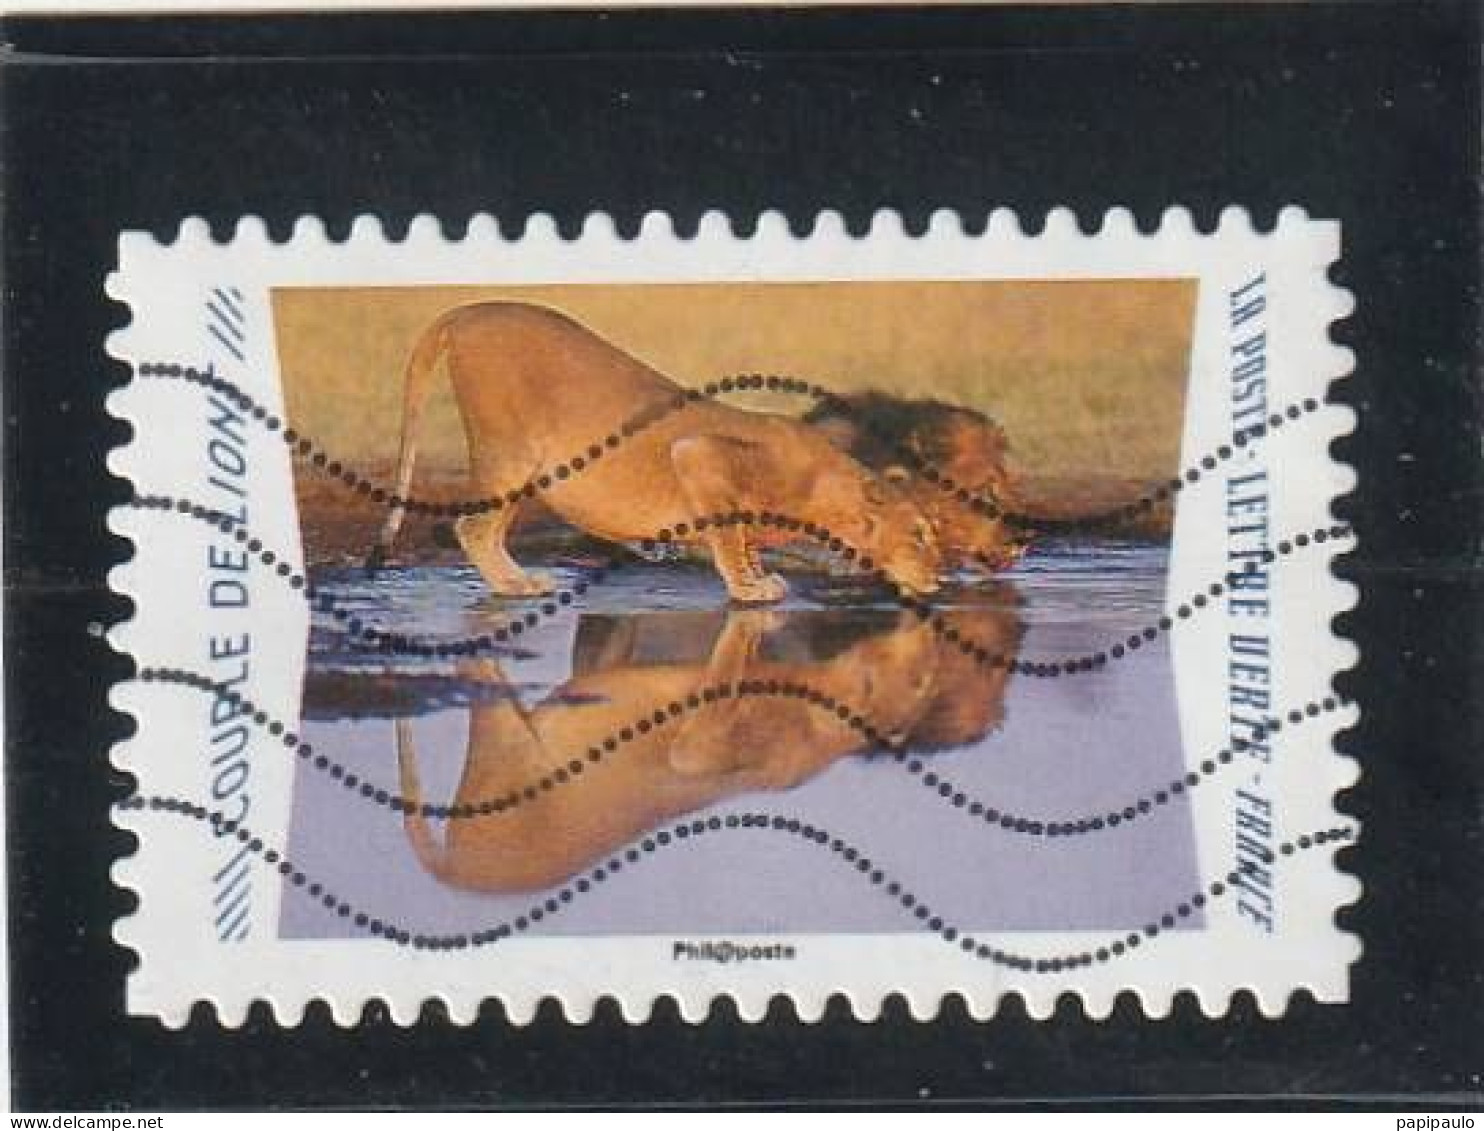 FRANCE 2020 Y&T 1817  Lettre Verte  Couple De Lions - Used Stamps